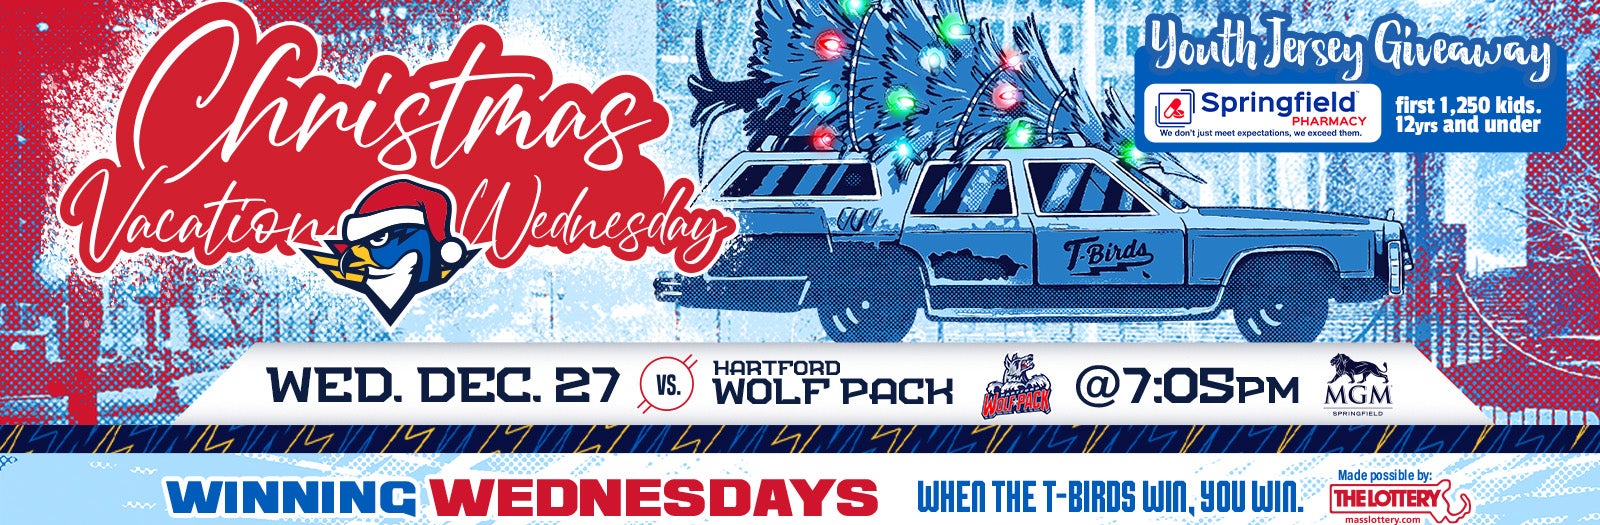 TONIGHT: Springfield Thunderbirds vs Hartford Wolf Pack 